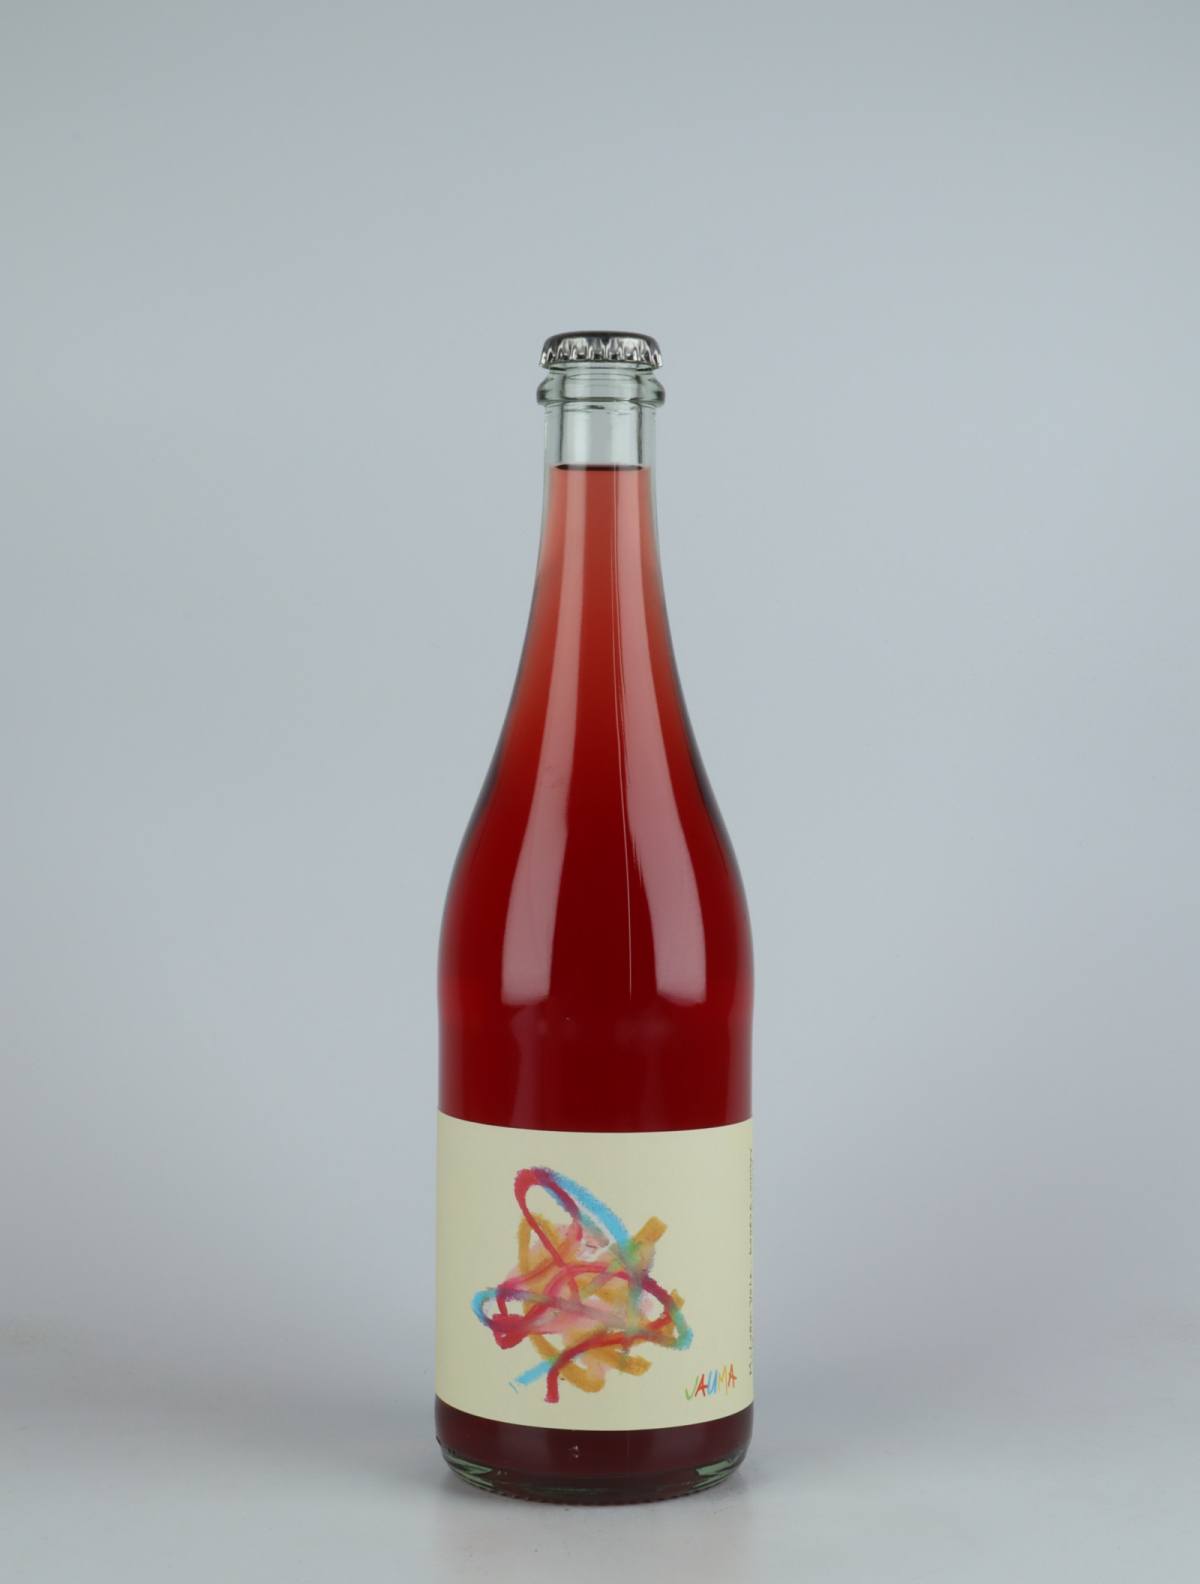 En flaske 2021 Why try so hard Rosé fra Jauma, Adelaide Hills i Australien